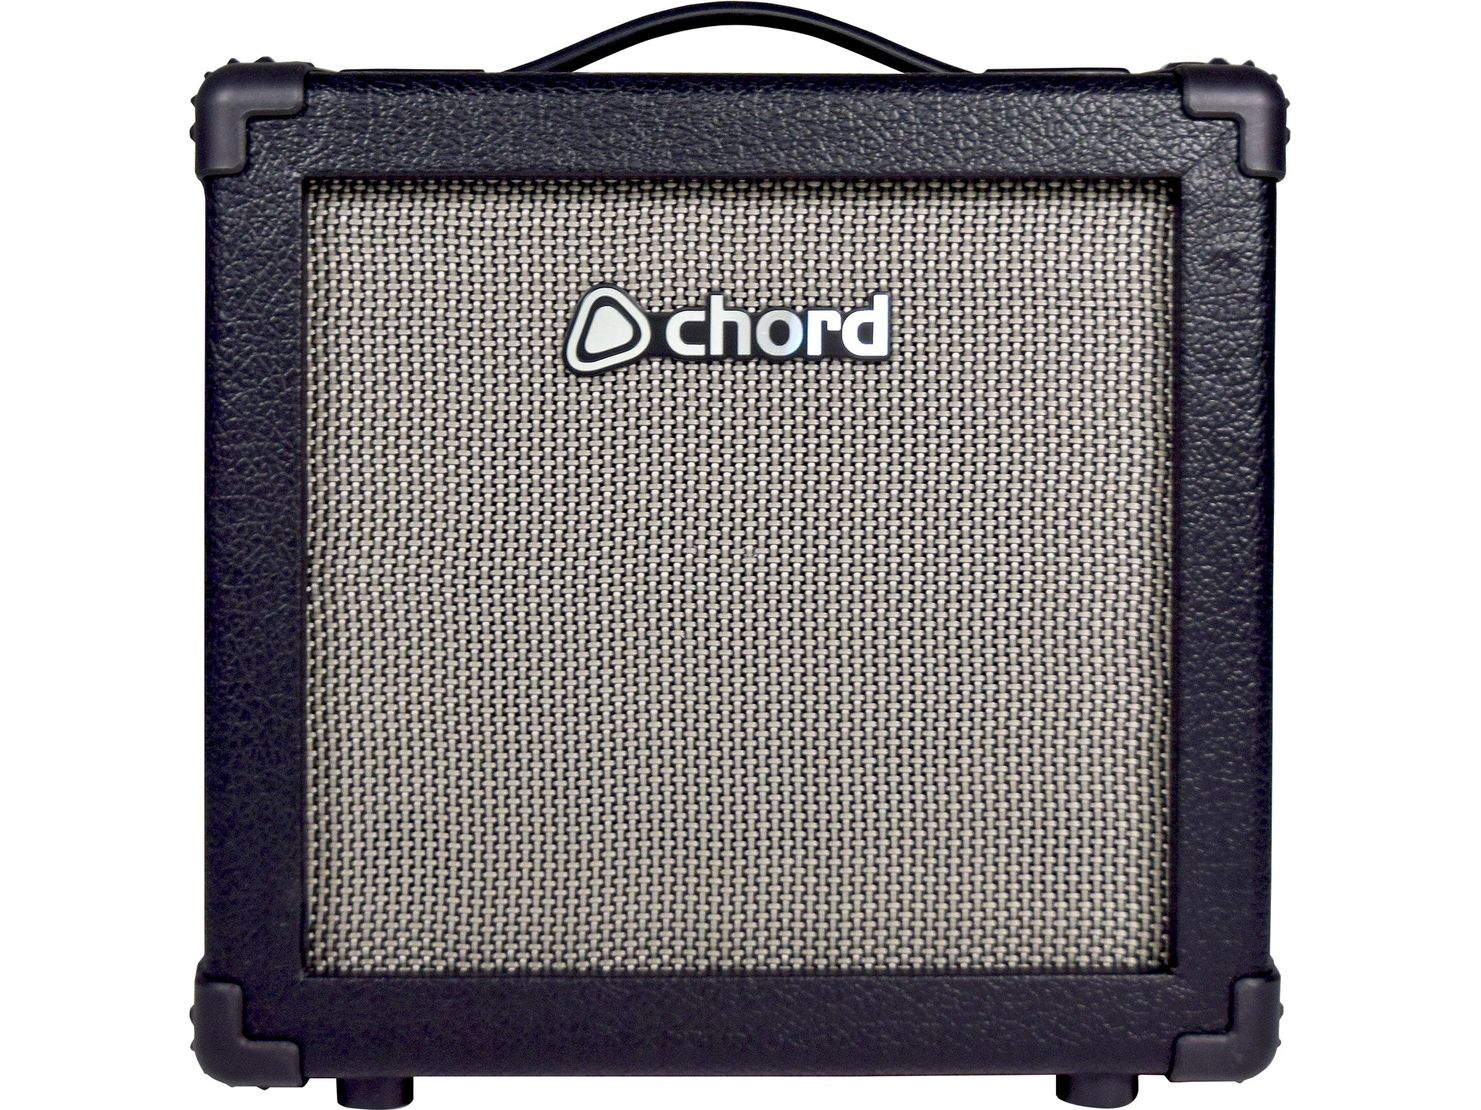 Chord CB-15BT Bass Amplifier with Bluetooth®